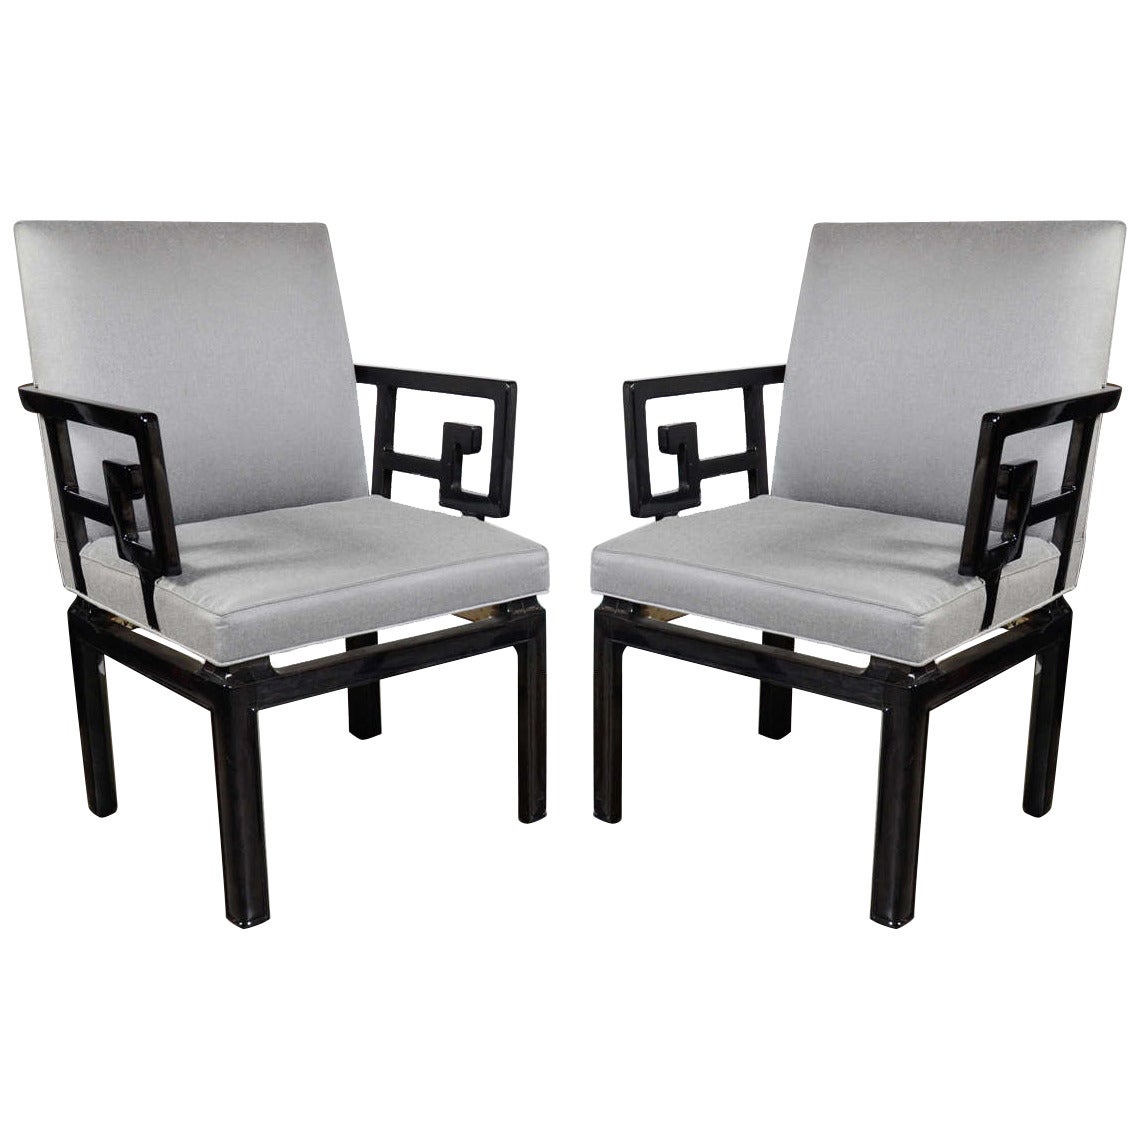 Baker-Beistellstühle in schwarzem Lack, Mid-Century Modern, Paar